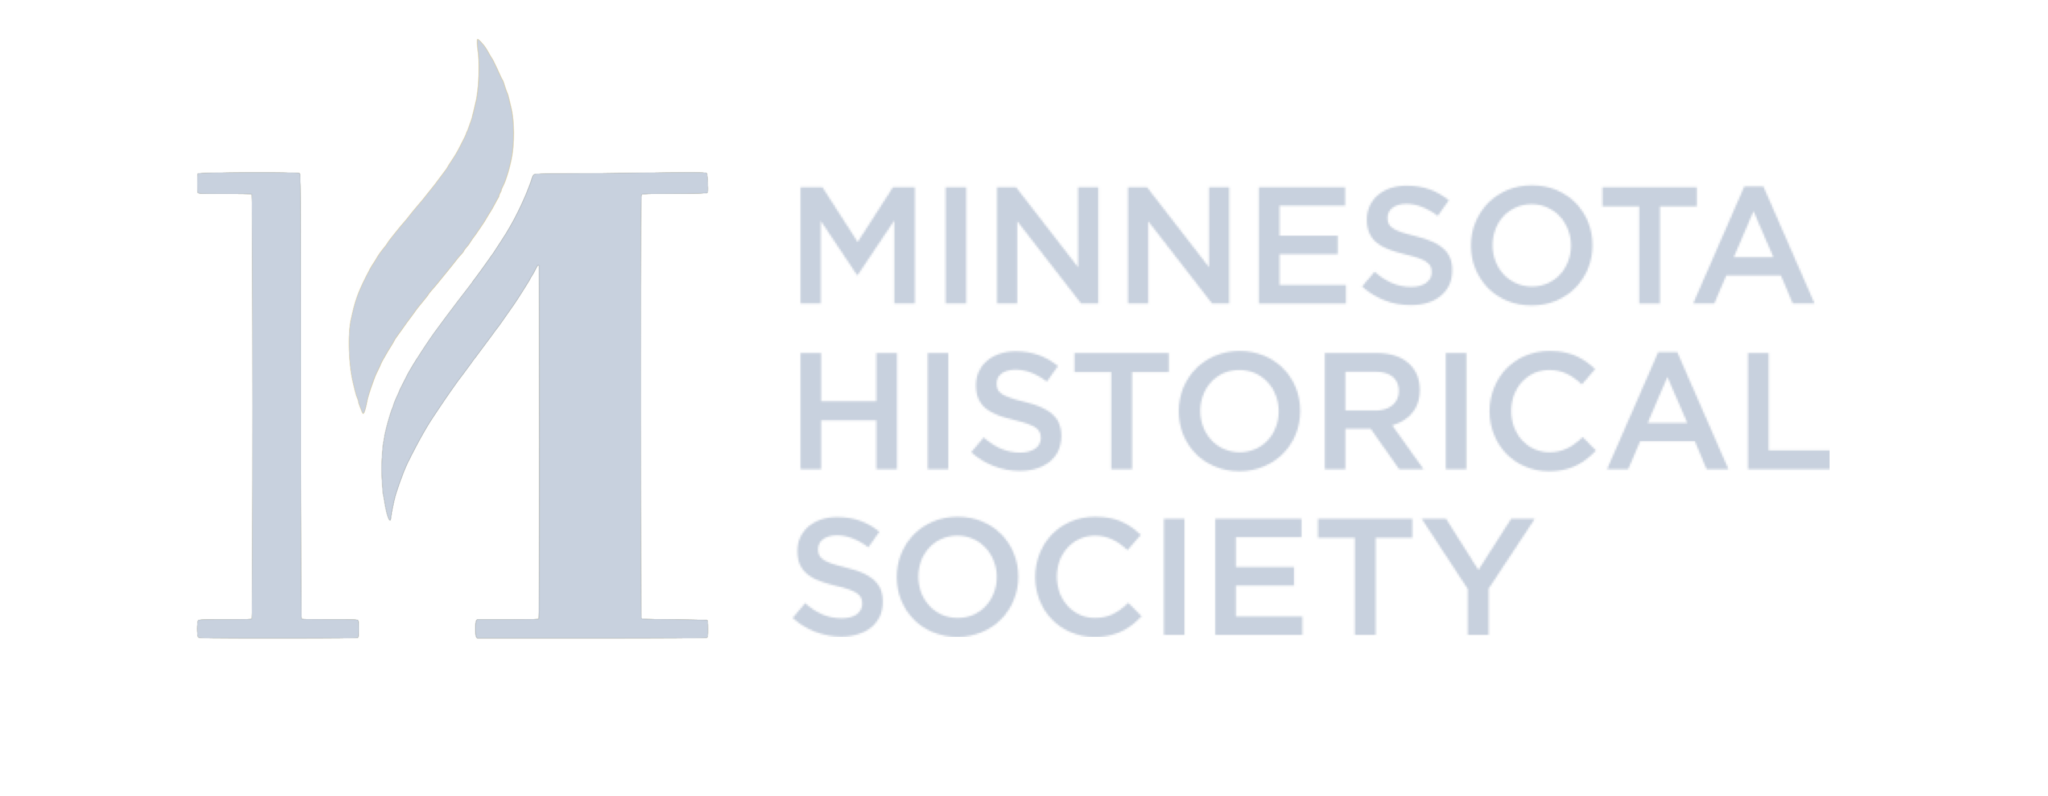 Minnesota Historical Society logo